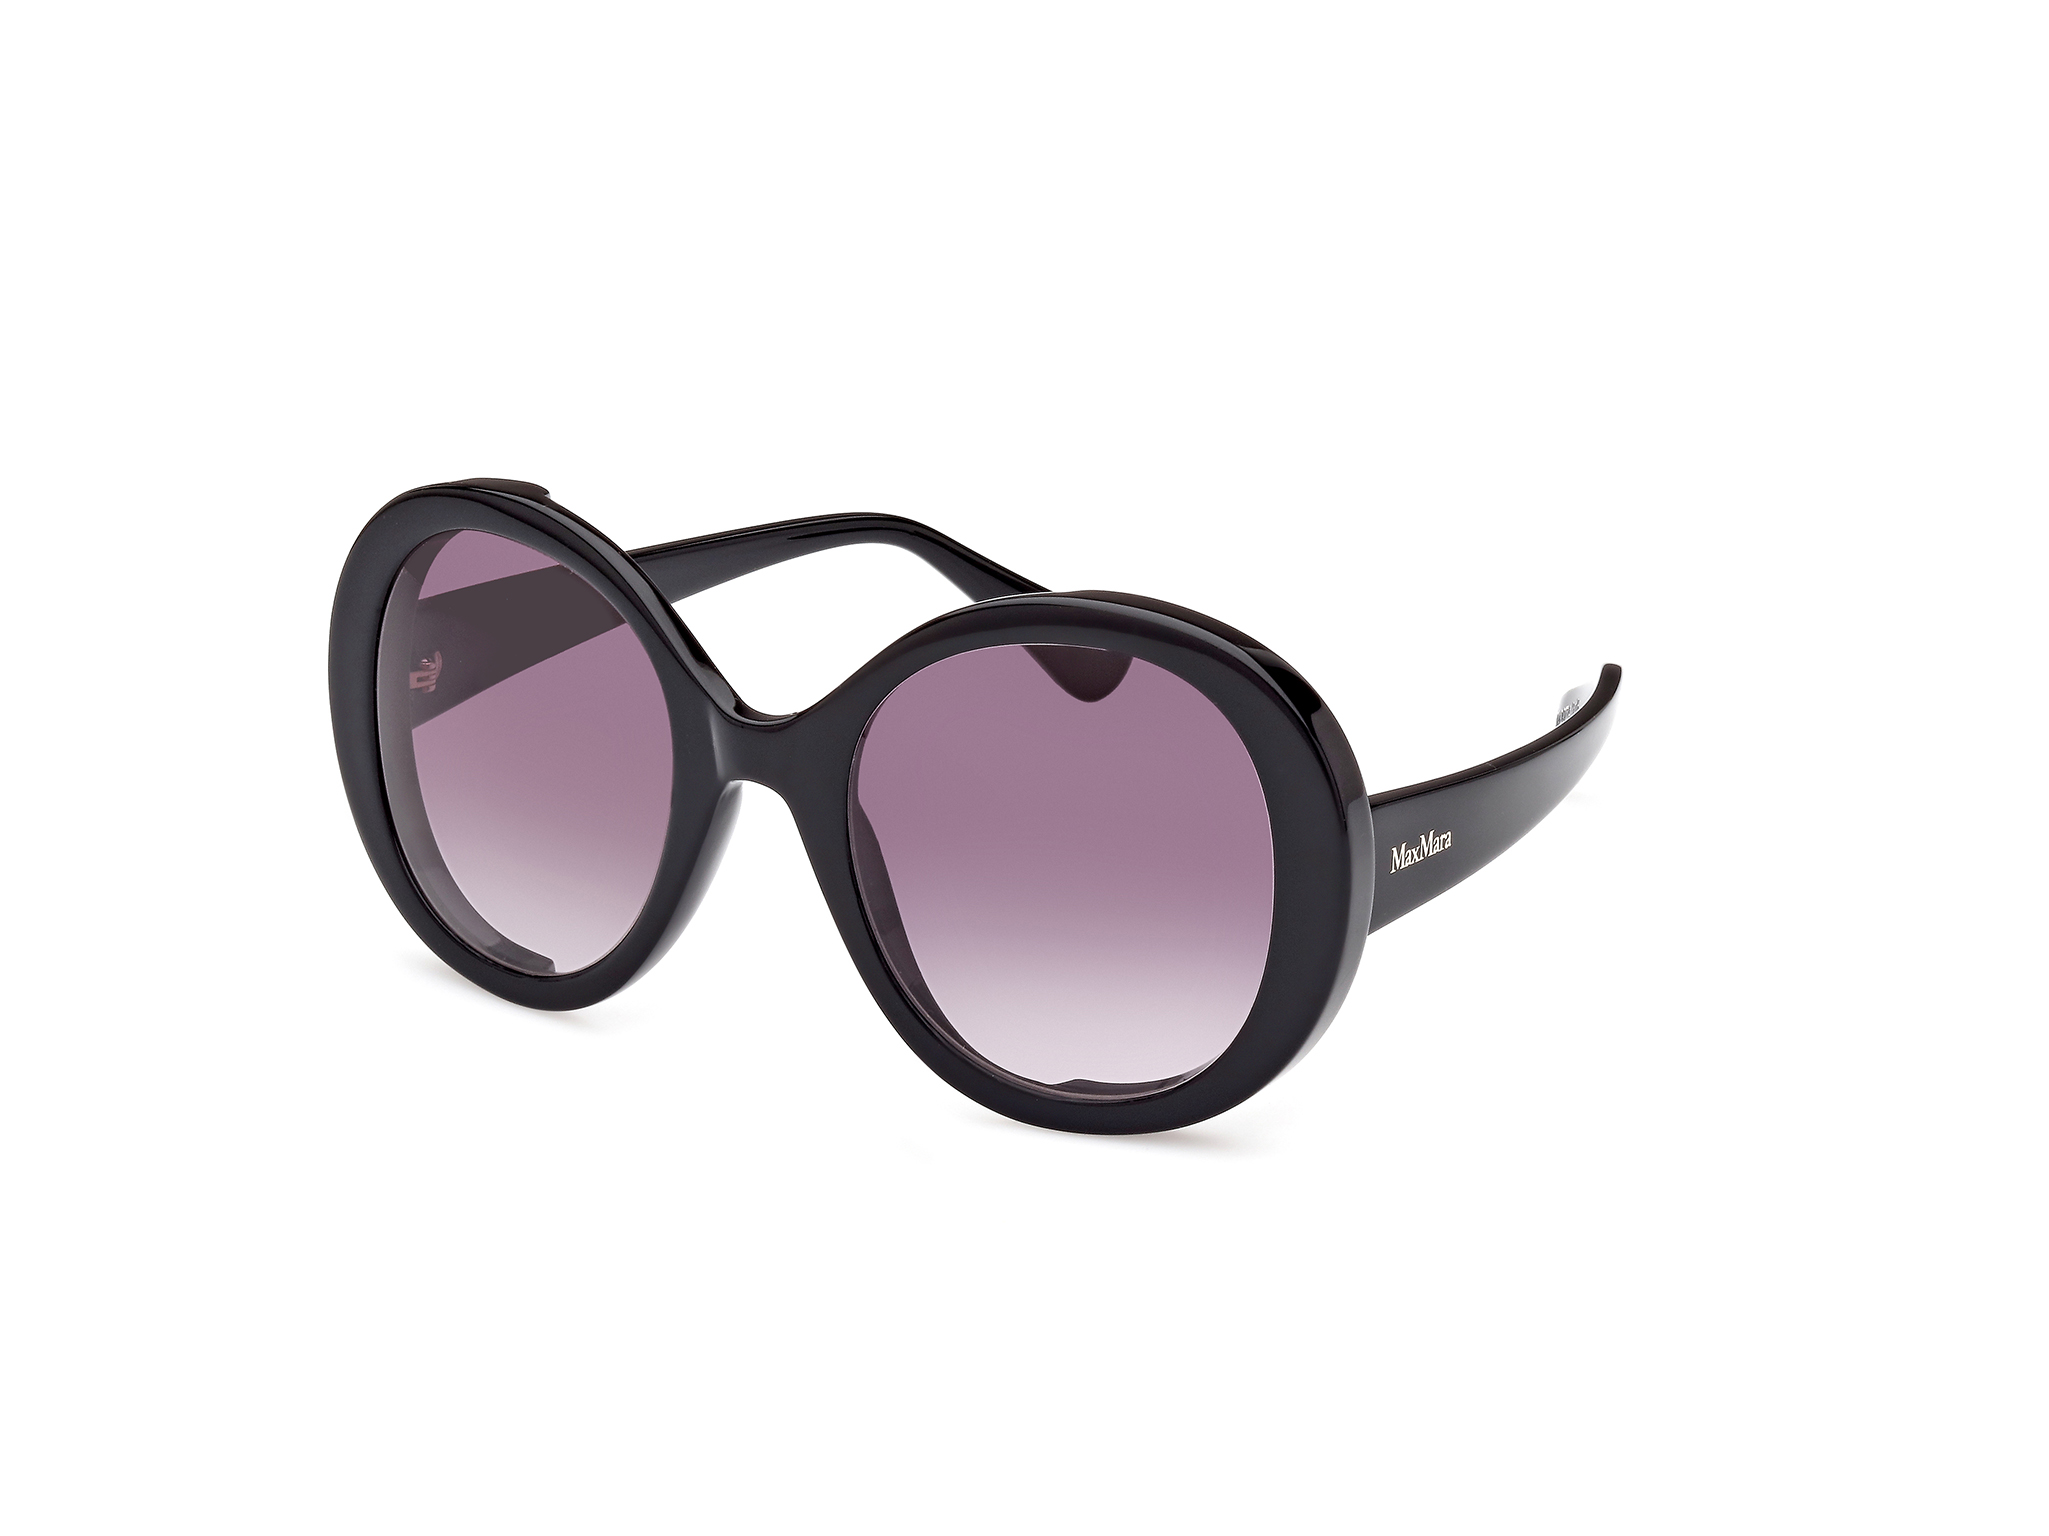 occhiali occhiale da sole per donna e ragazza firmati max mara mm0074 01b renée neri rotondi nuova collezione occhiale tondi nero lenti sfumate